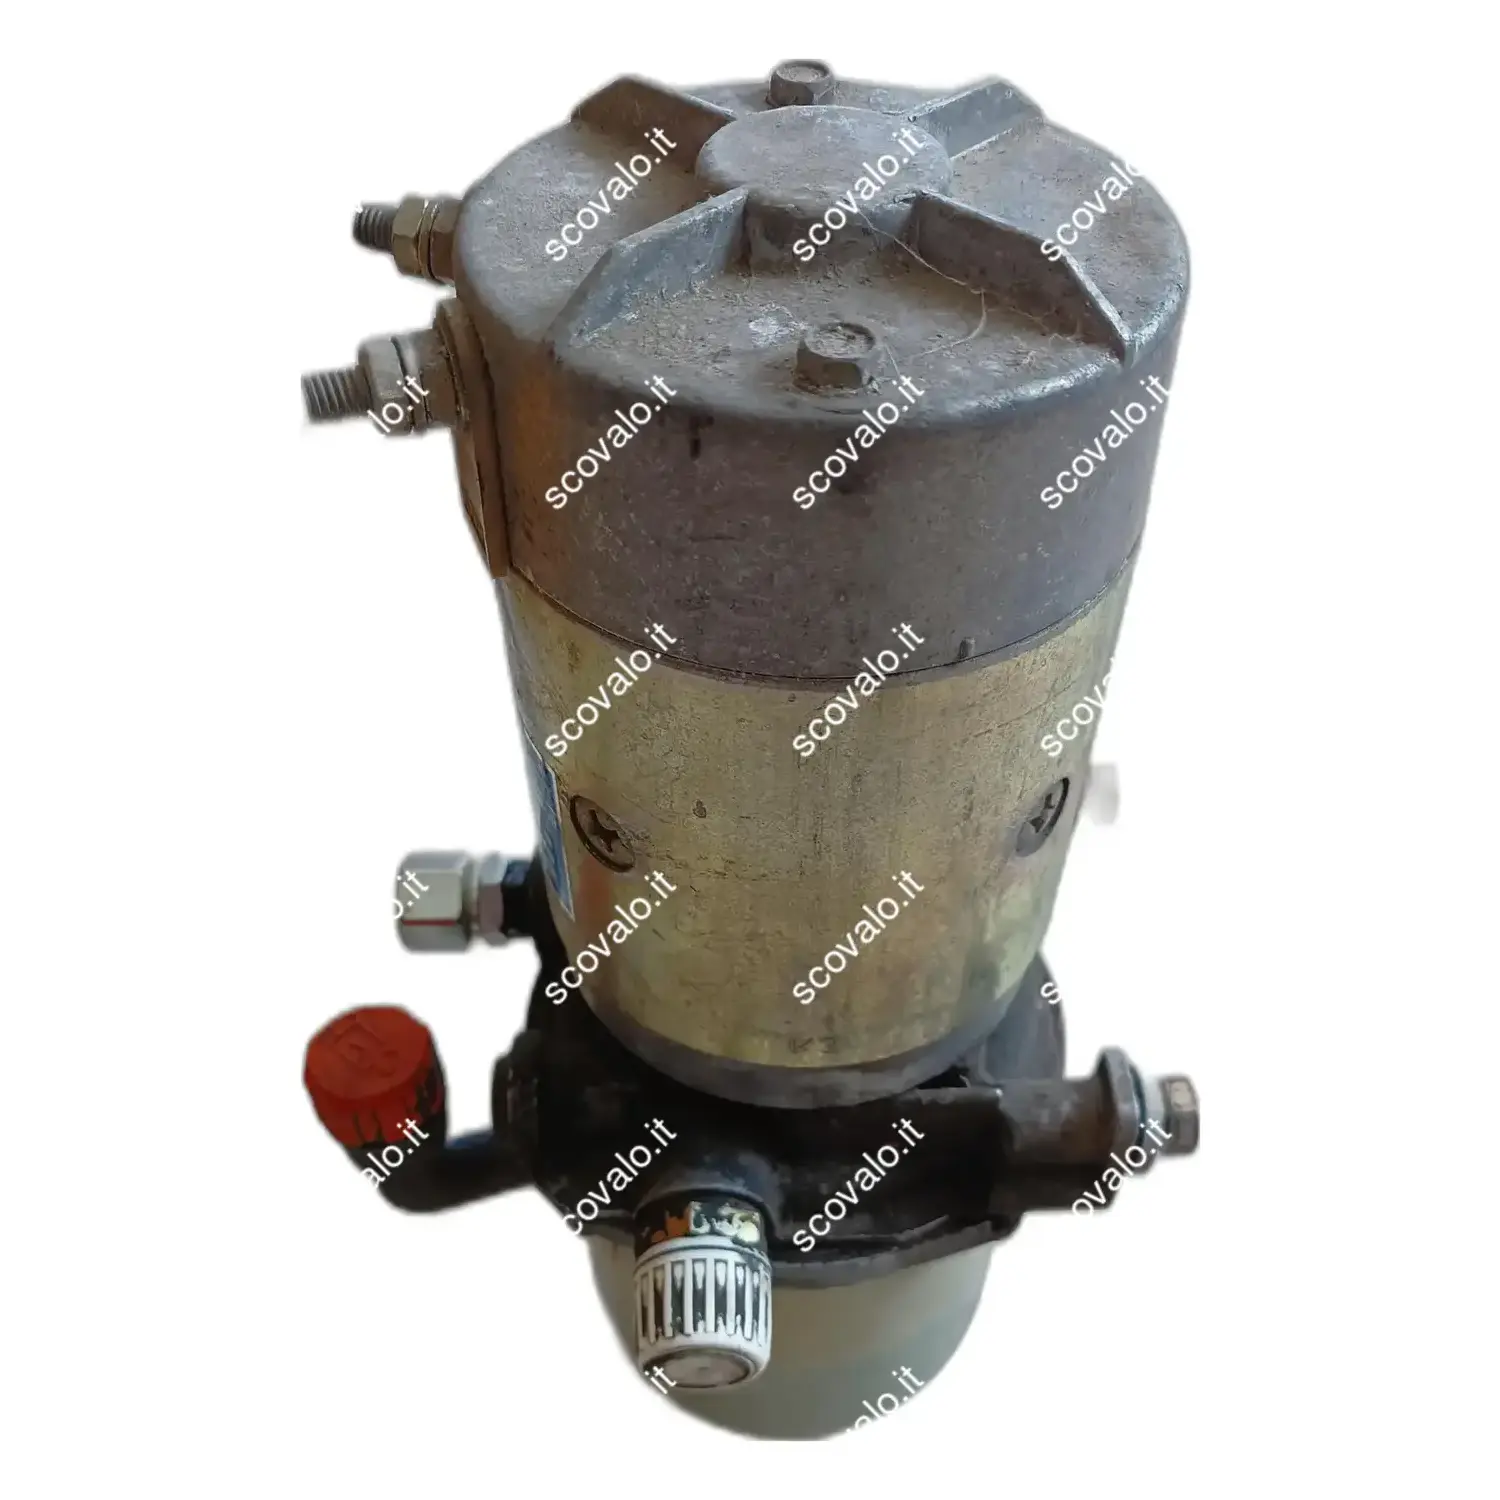 immagine pompa idraulica carrello muletto transpallet elettrico 24V 1,5Kw Jungheinrich usato